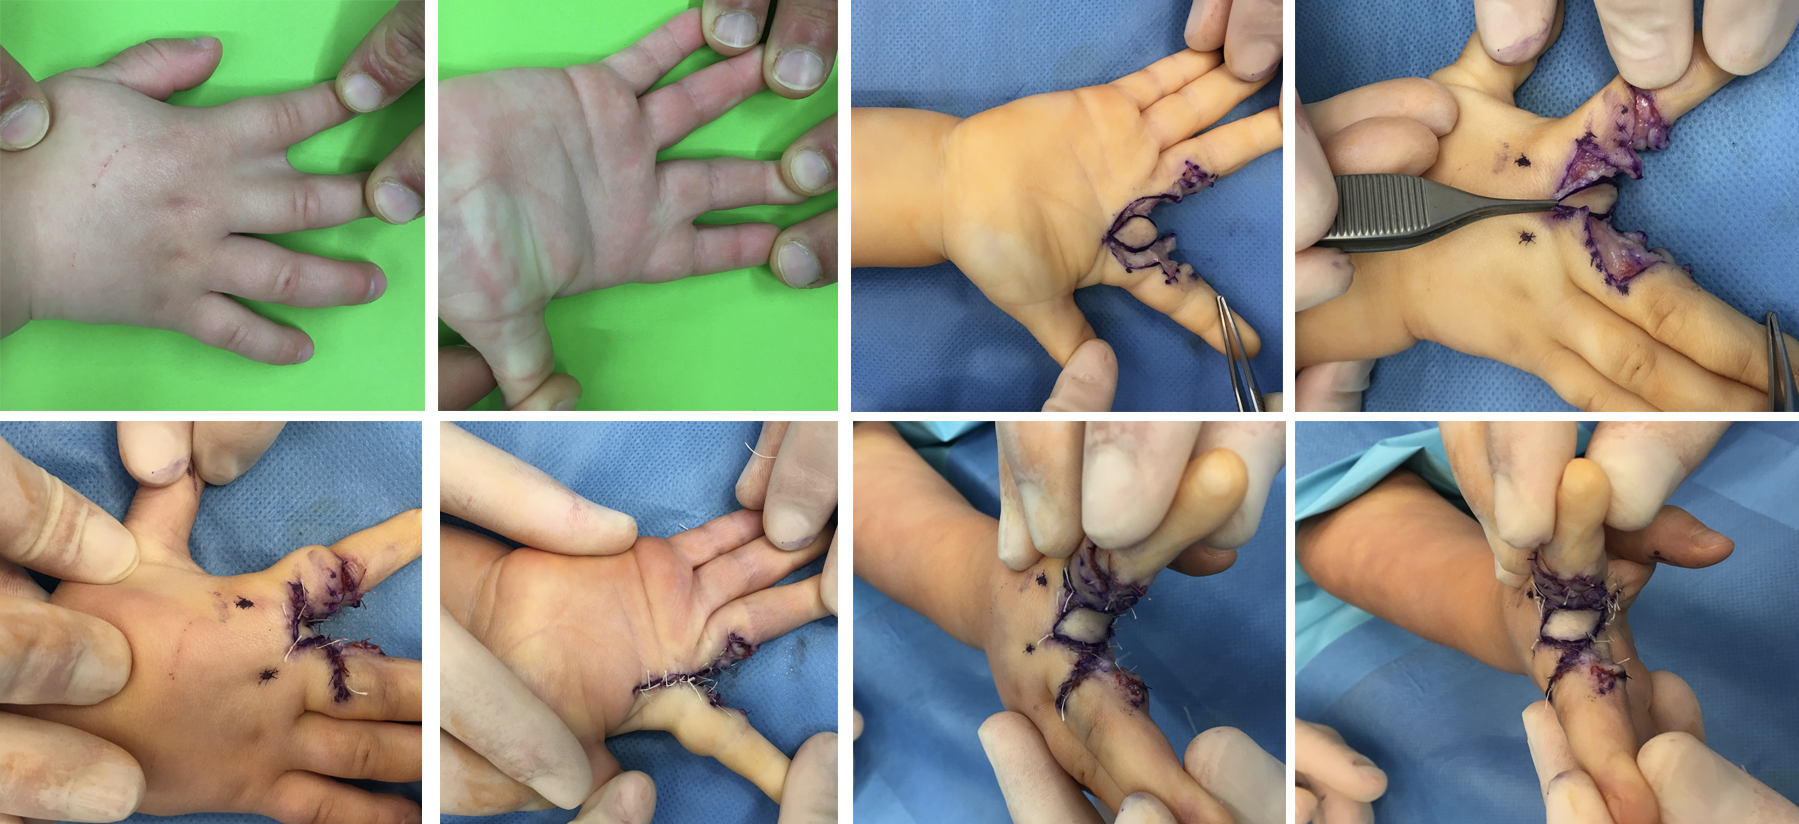 Sindactilia mano, malformación frecuente en niños